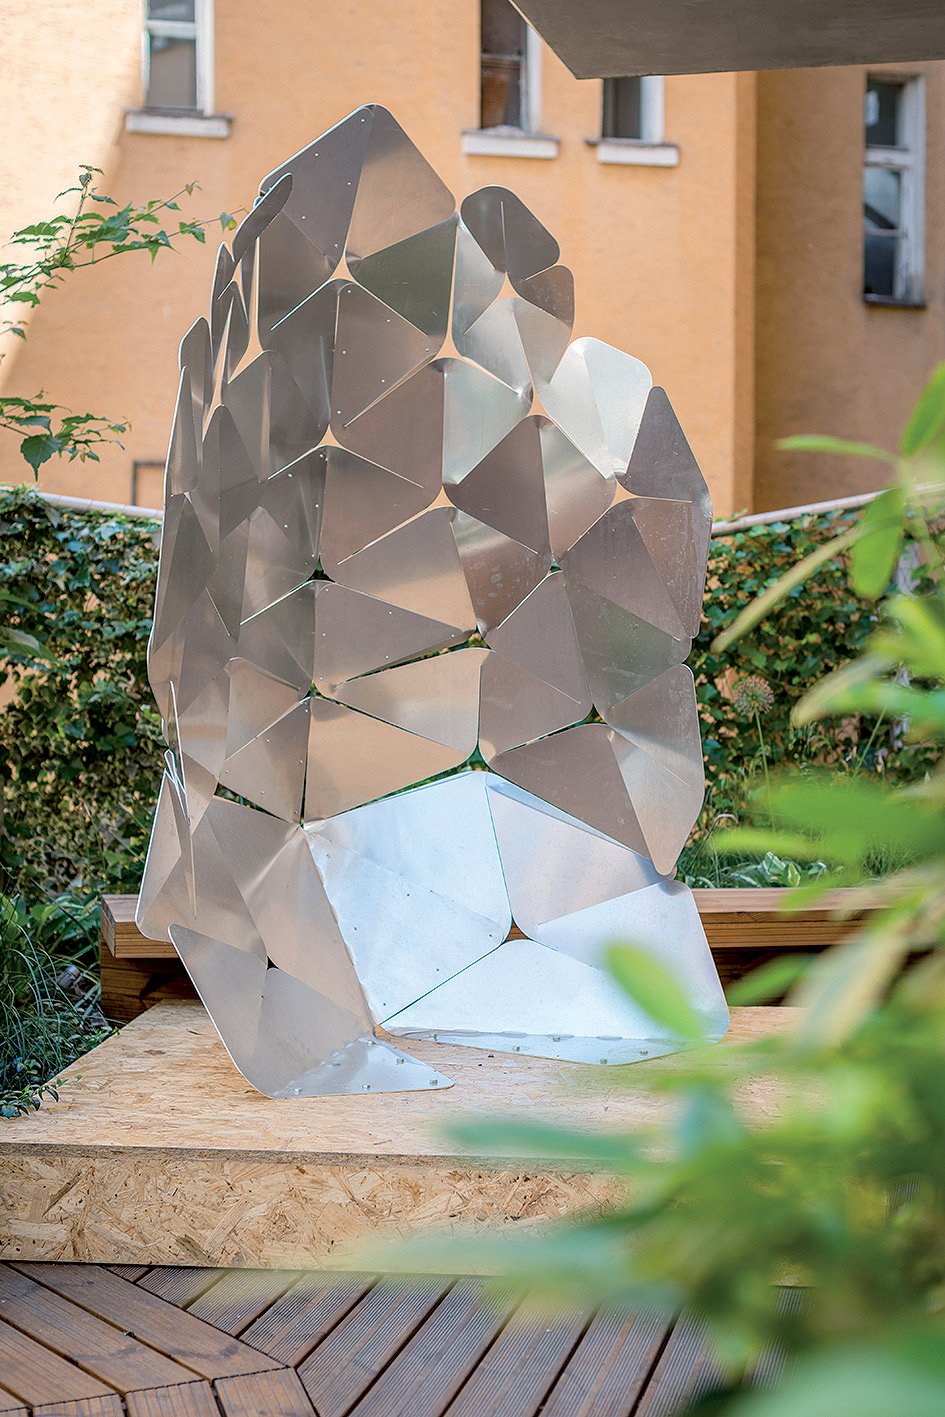 Autori: Gréta Wildeová a Jan Adamus – perforovanie rigidného kovového materiálu informovanými vzormi, ktoré umožnia nadobudnúť tvar umožňujúci simulovať amorfné architektonické formy